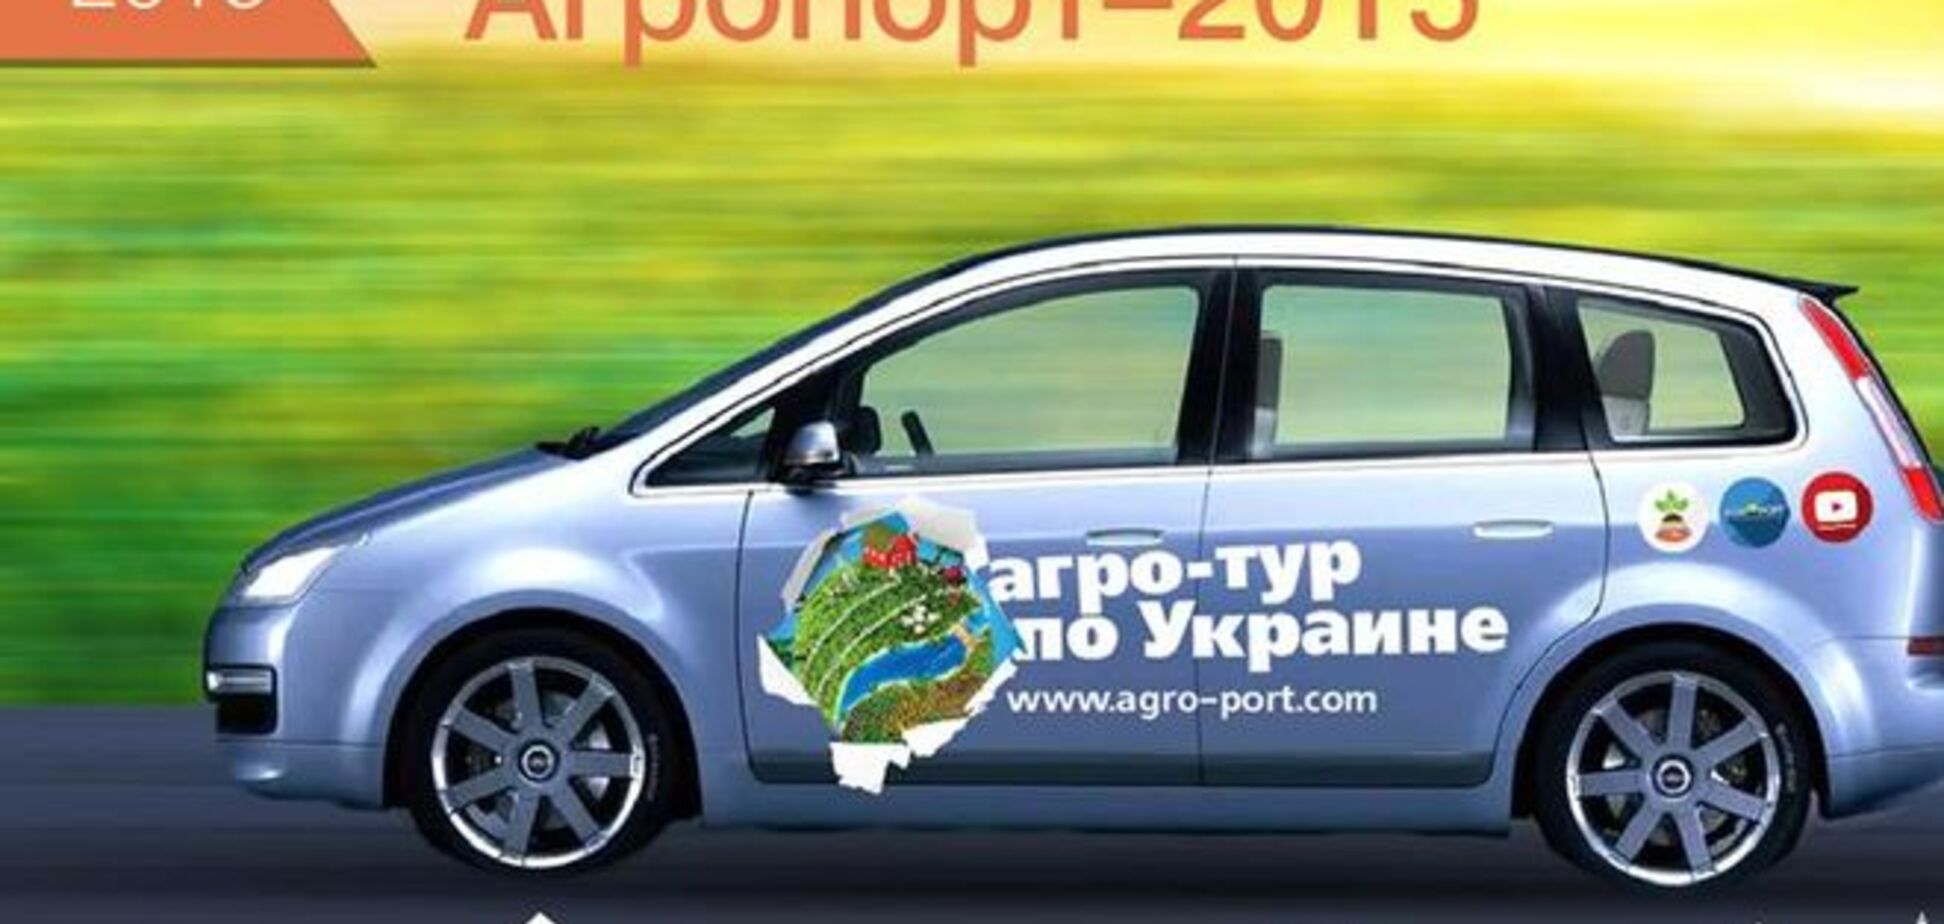 Агро-тур по Украине завершится на Харьковщине 